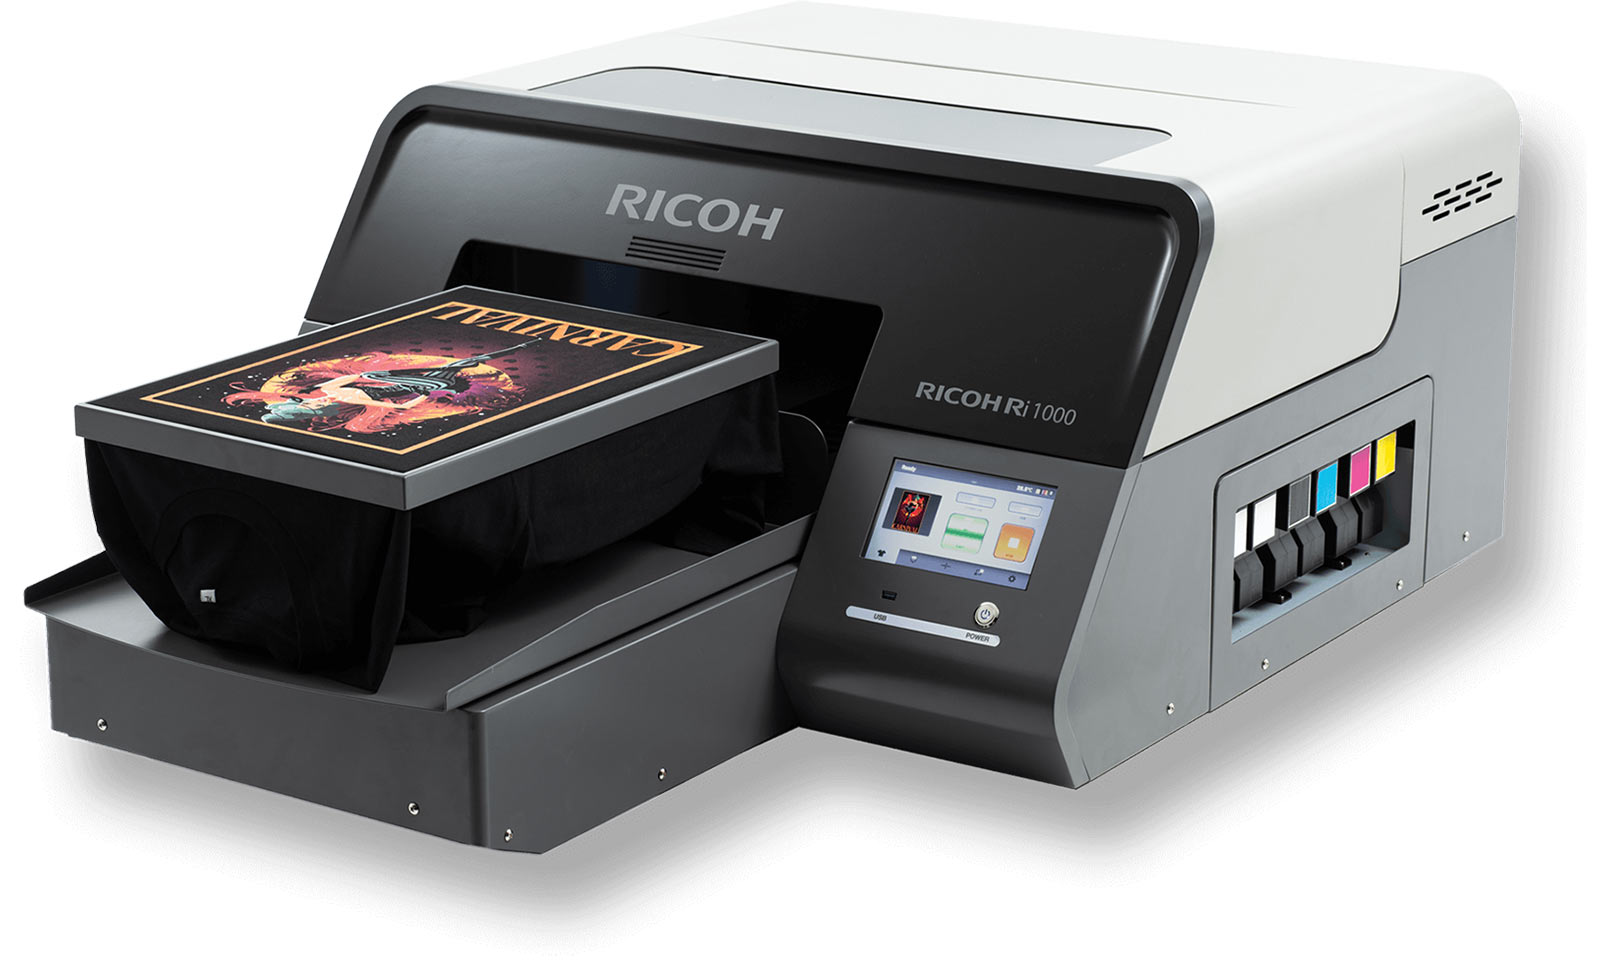 Ricoh представила новый струйный принтер в линейке устройств для прямой печати на одежде - Ricoh Ri 1000